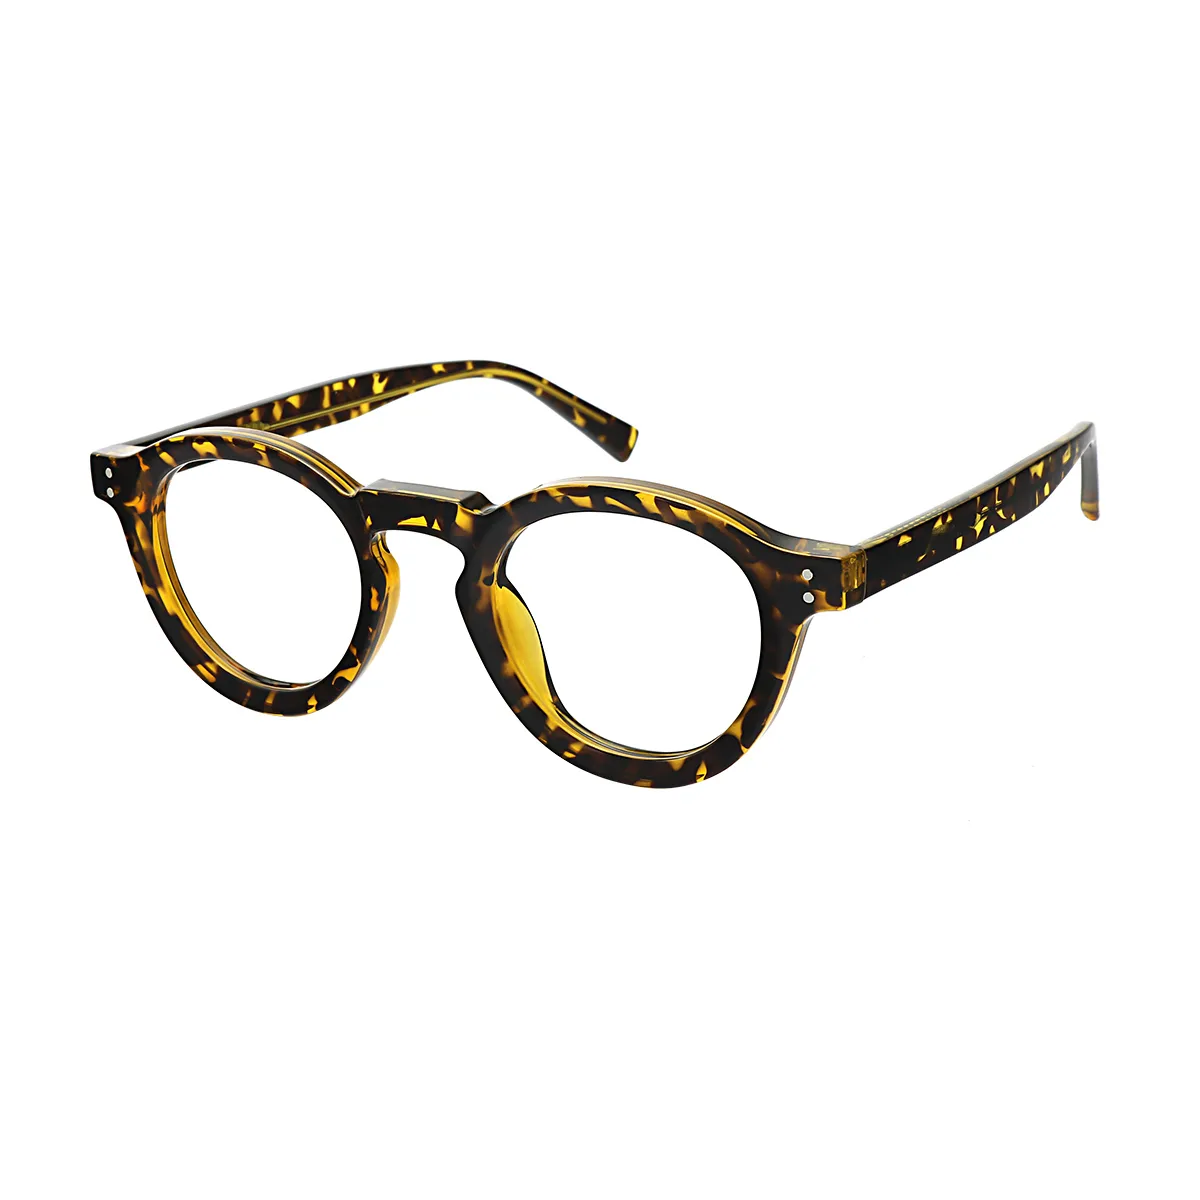 Groove - Round Tortoiseshell Glasses for Women - EFE